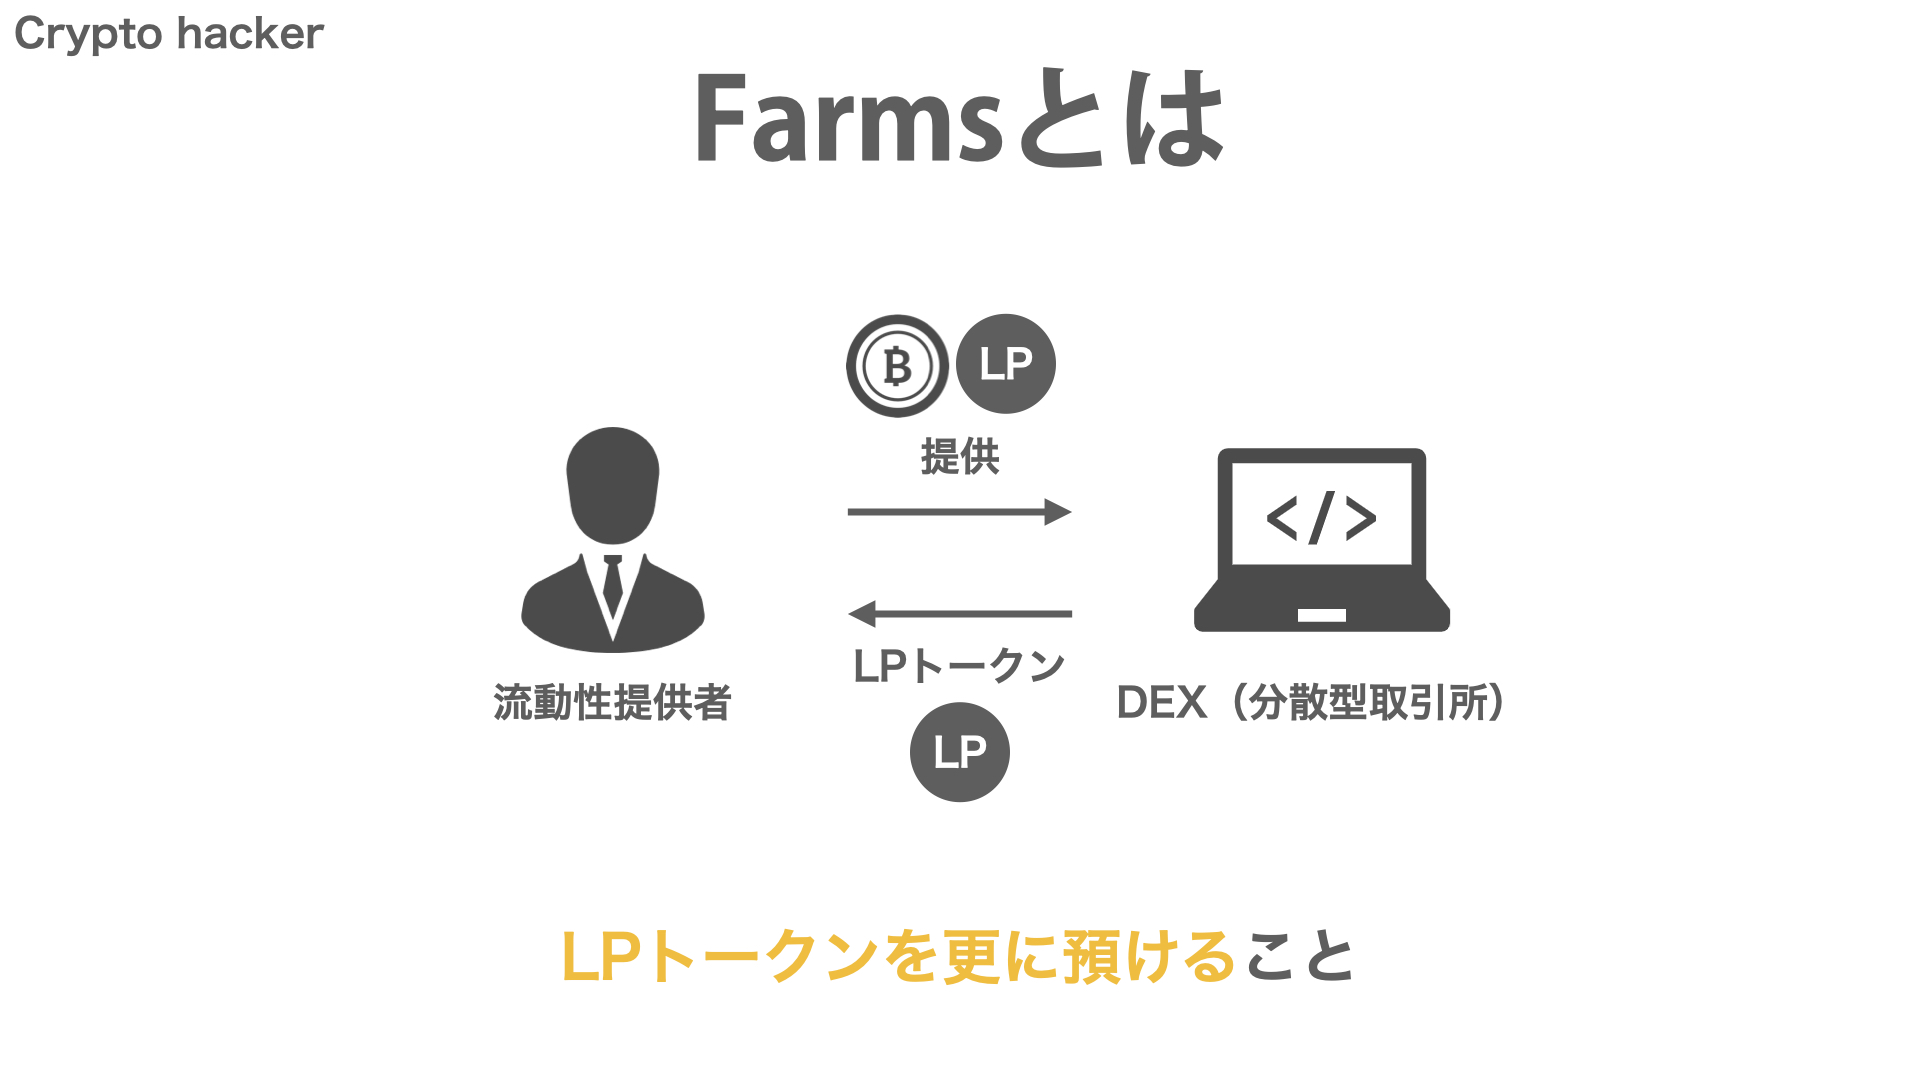 DeFi（分散型金融）　Farms